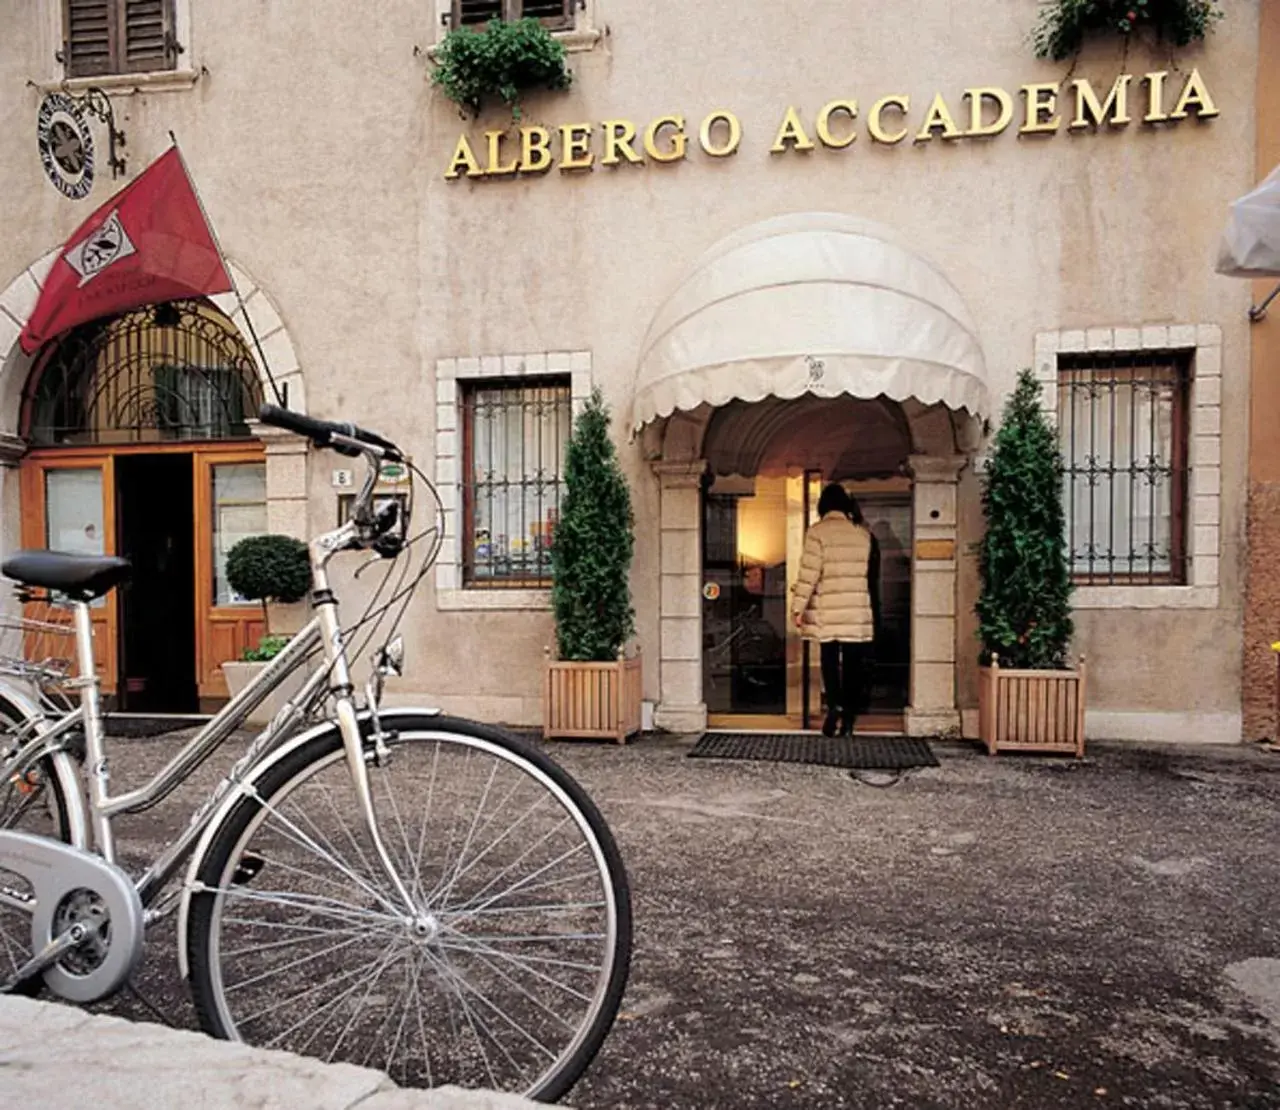 Facade/entrance in Albergo Accademia